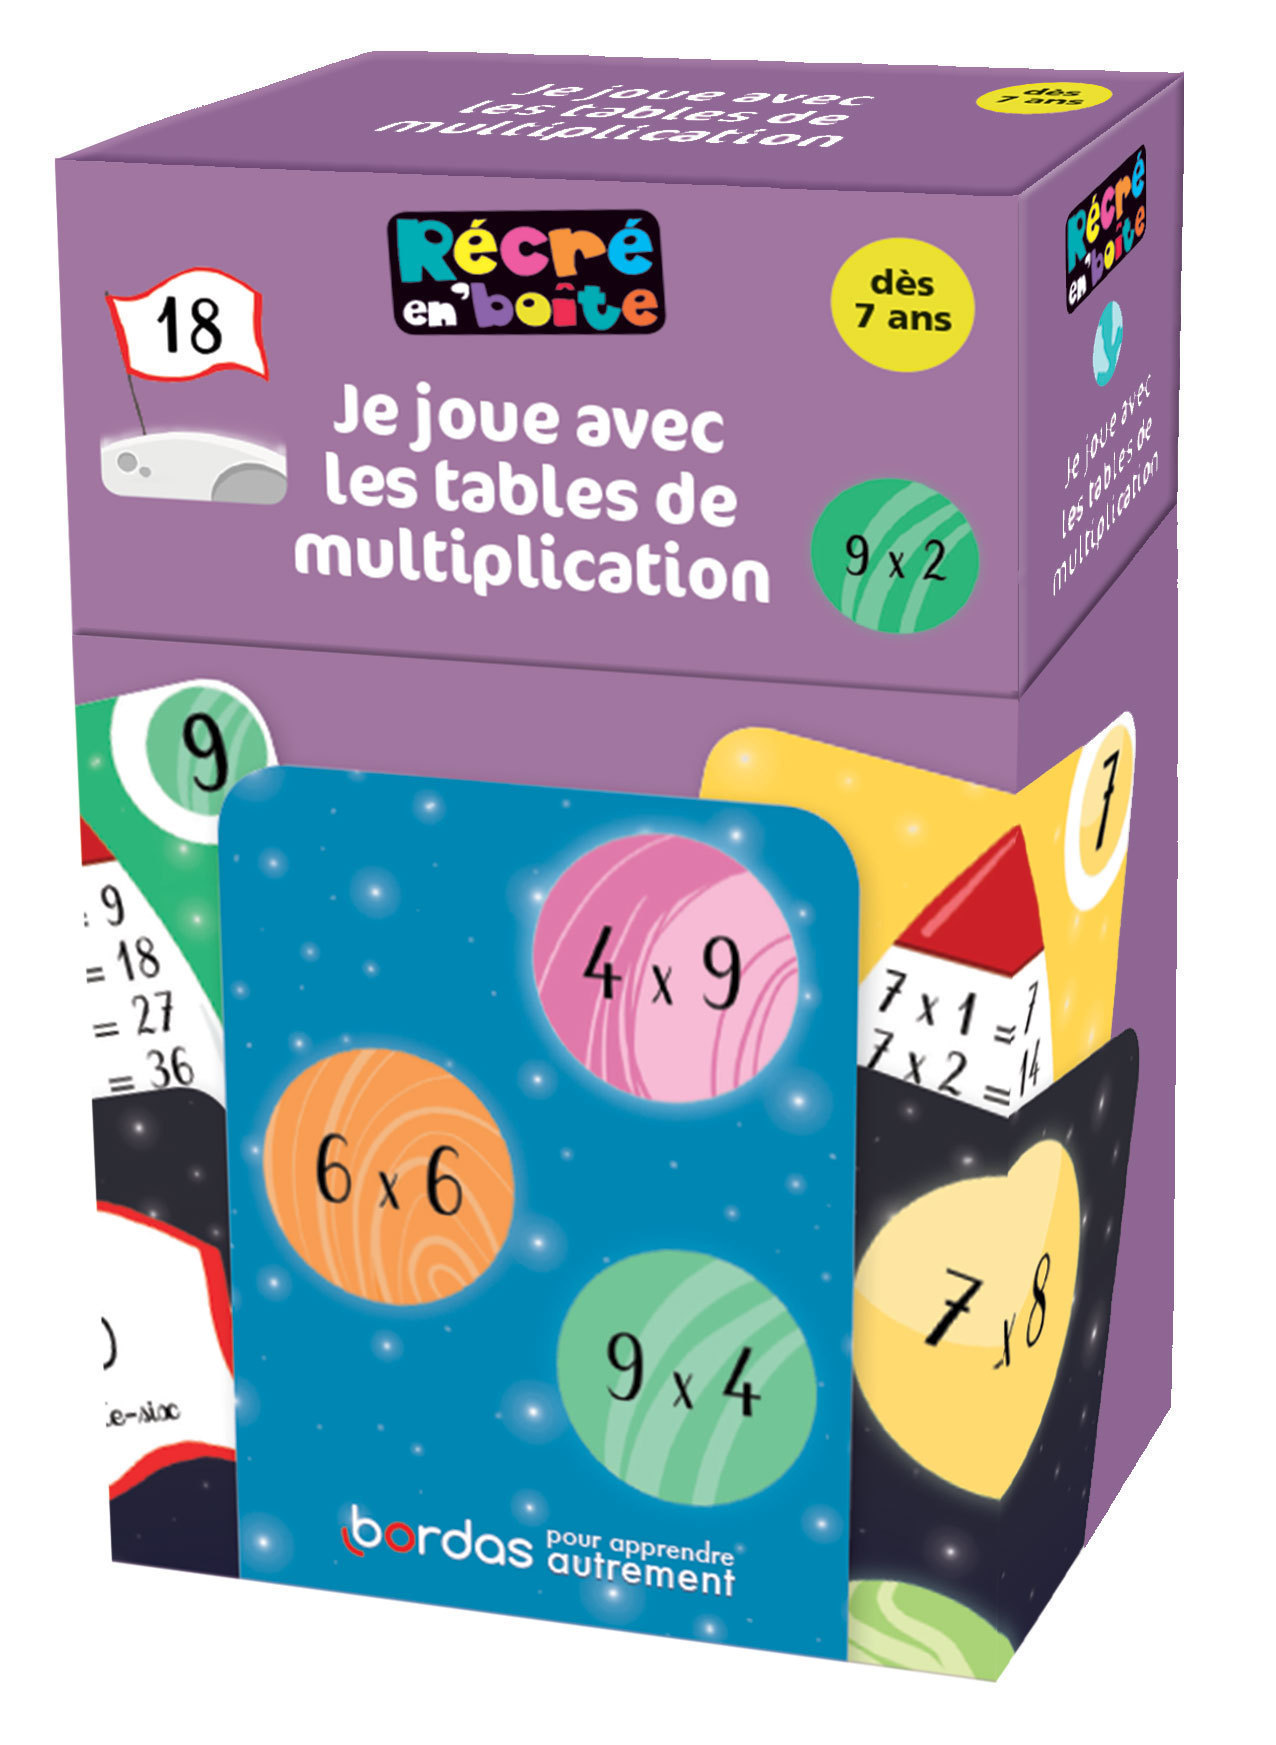 94 On Y Joue A La Recre Récré en boîte - Je joue avec les tables de multiplications Pas Cher